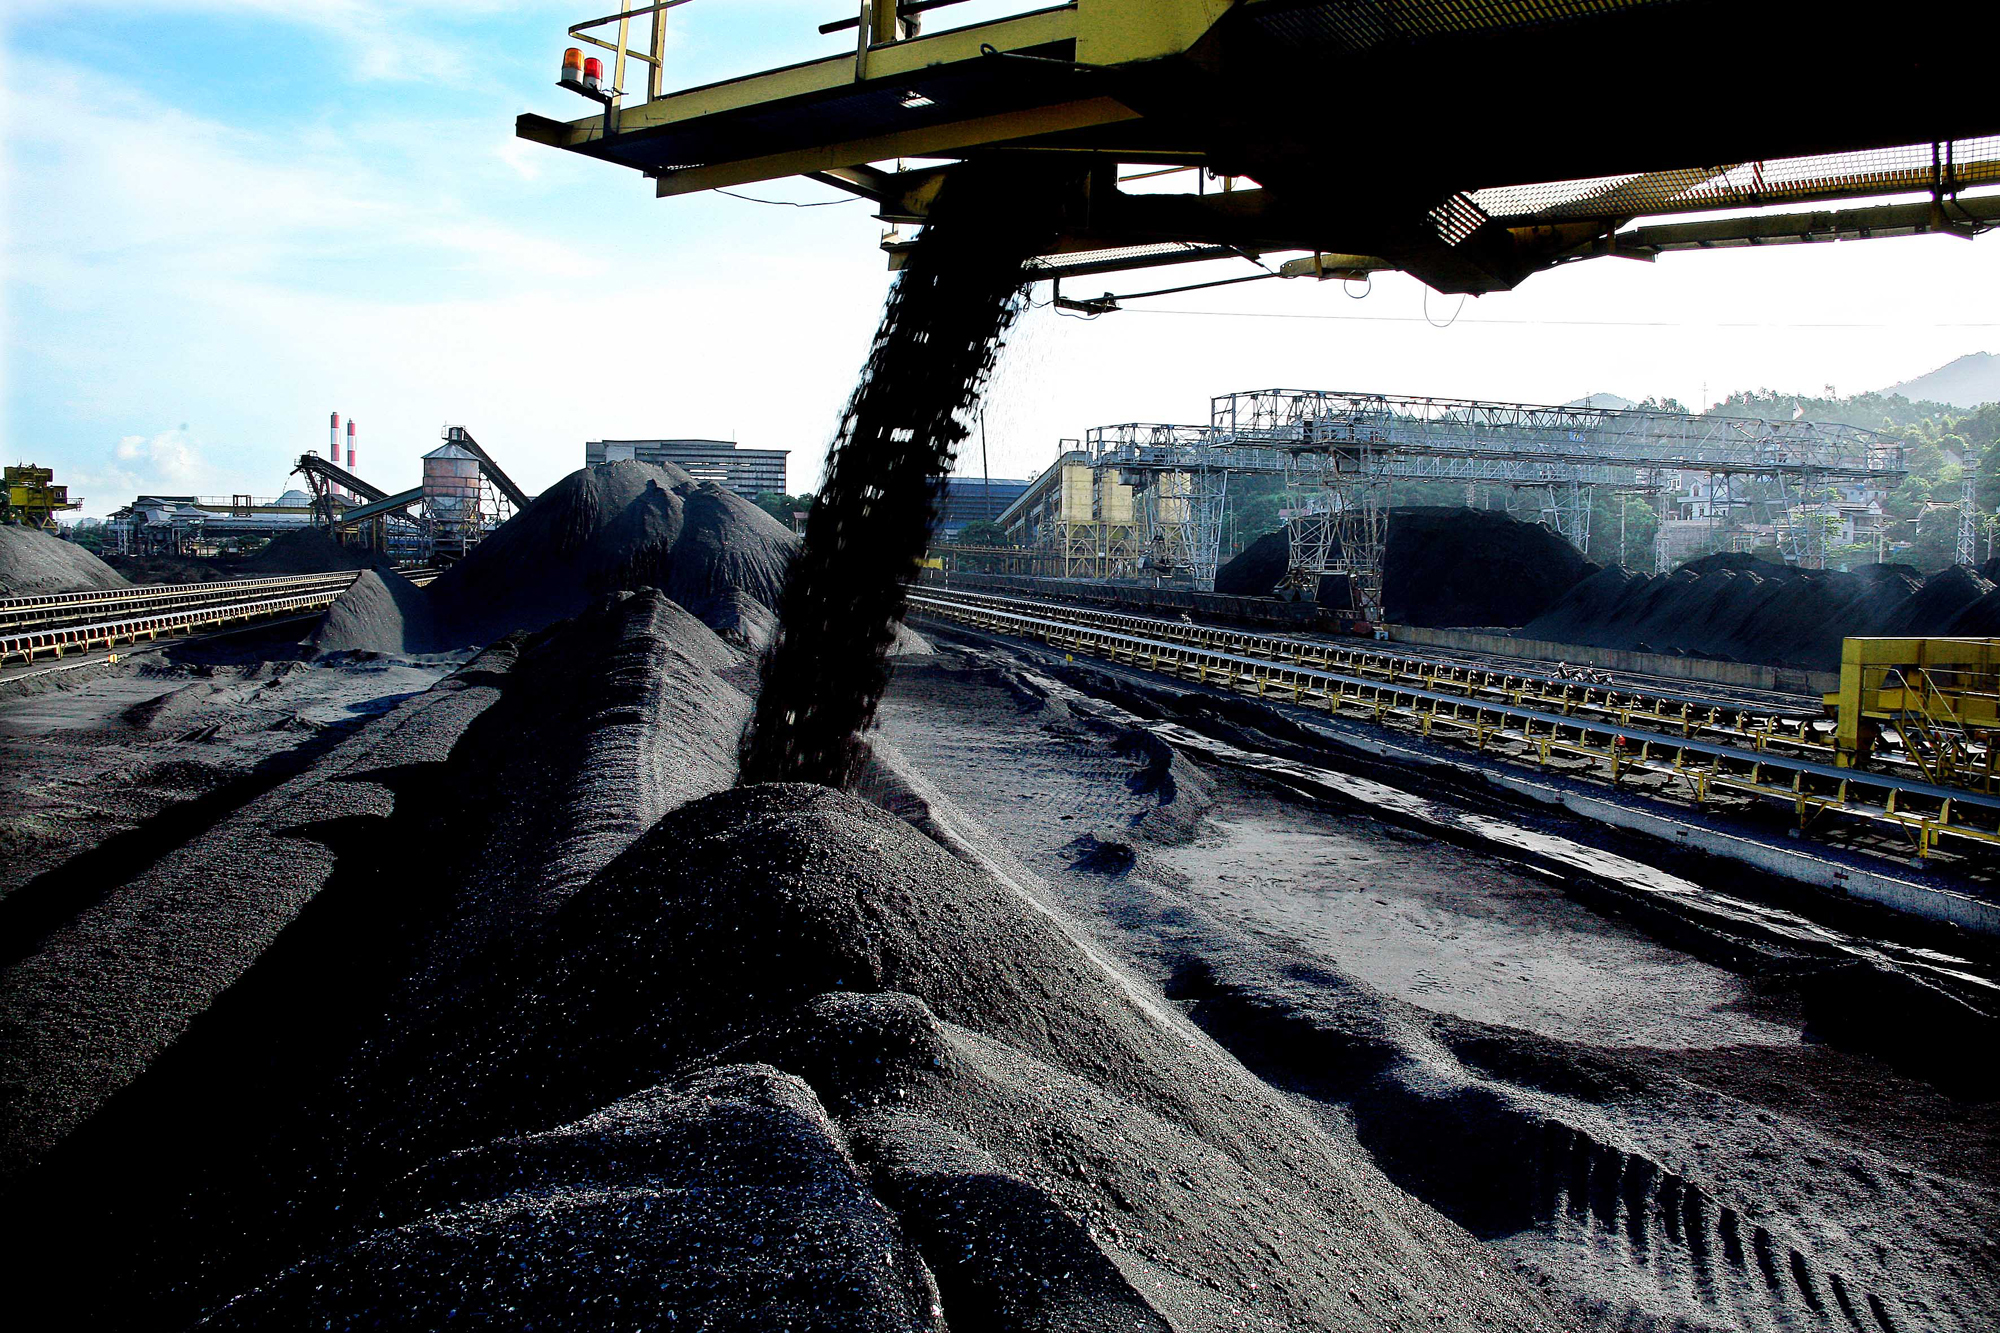 Lại đề nghị xuất khẩu than cục, than cám chất lượng cao